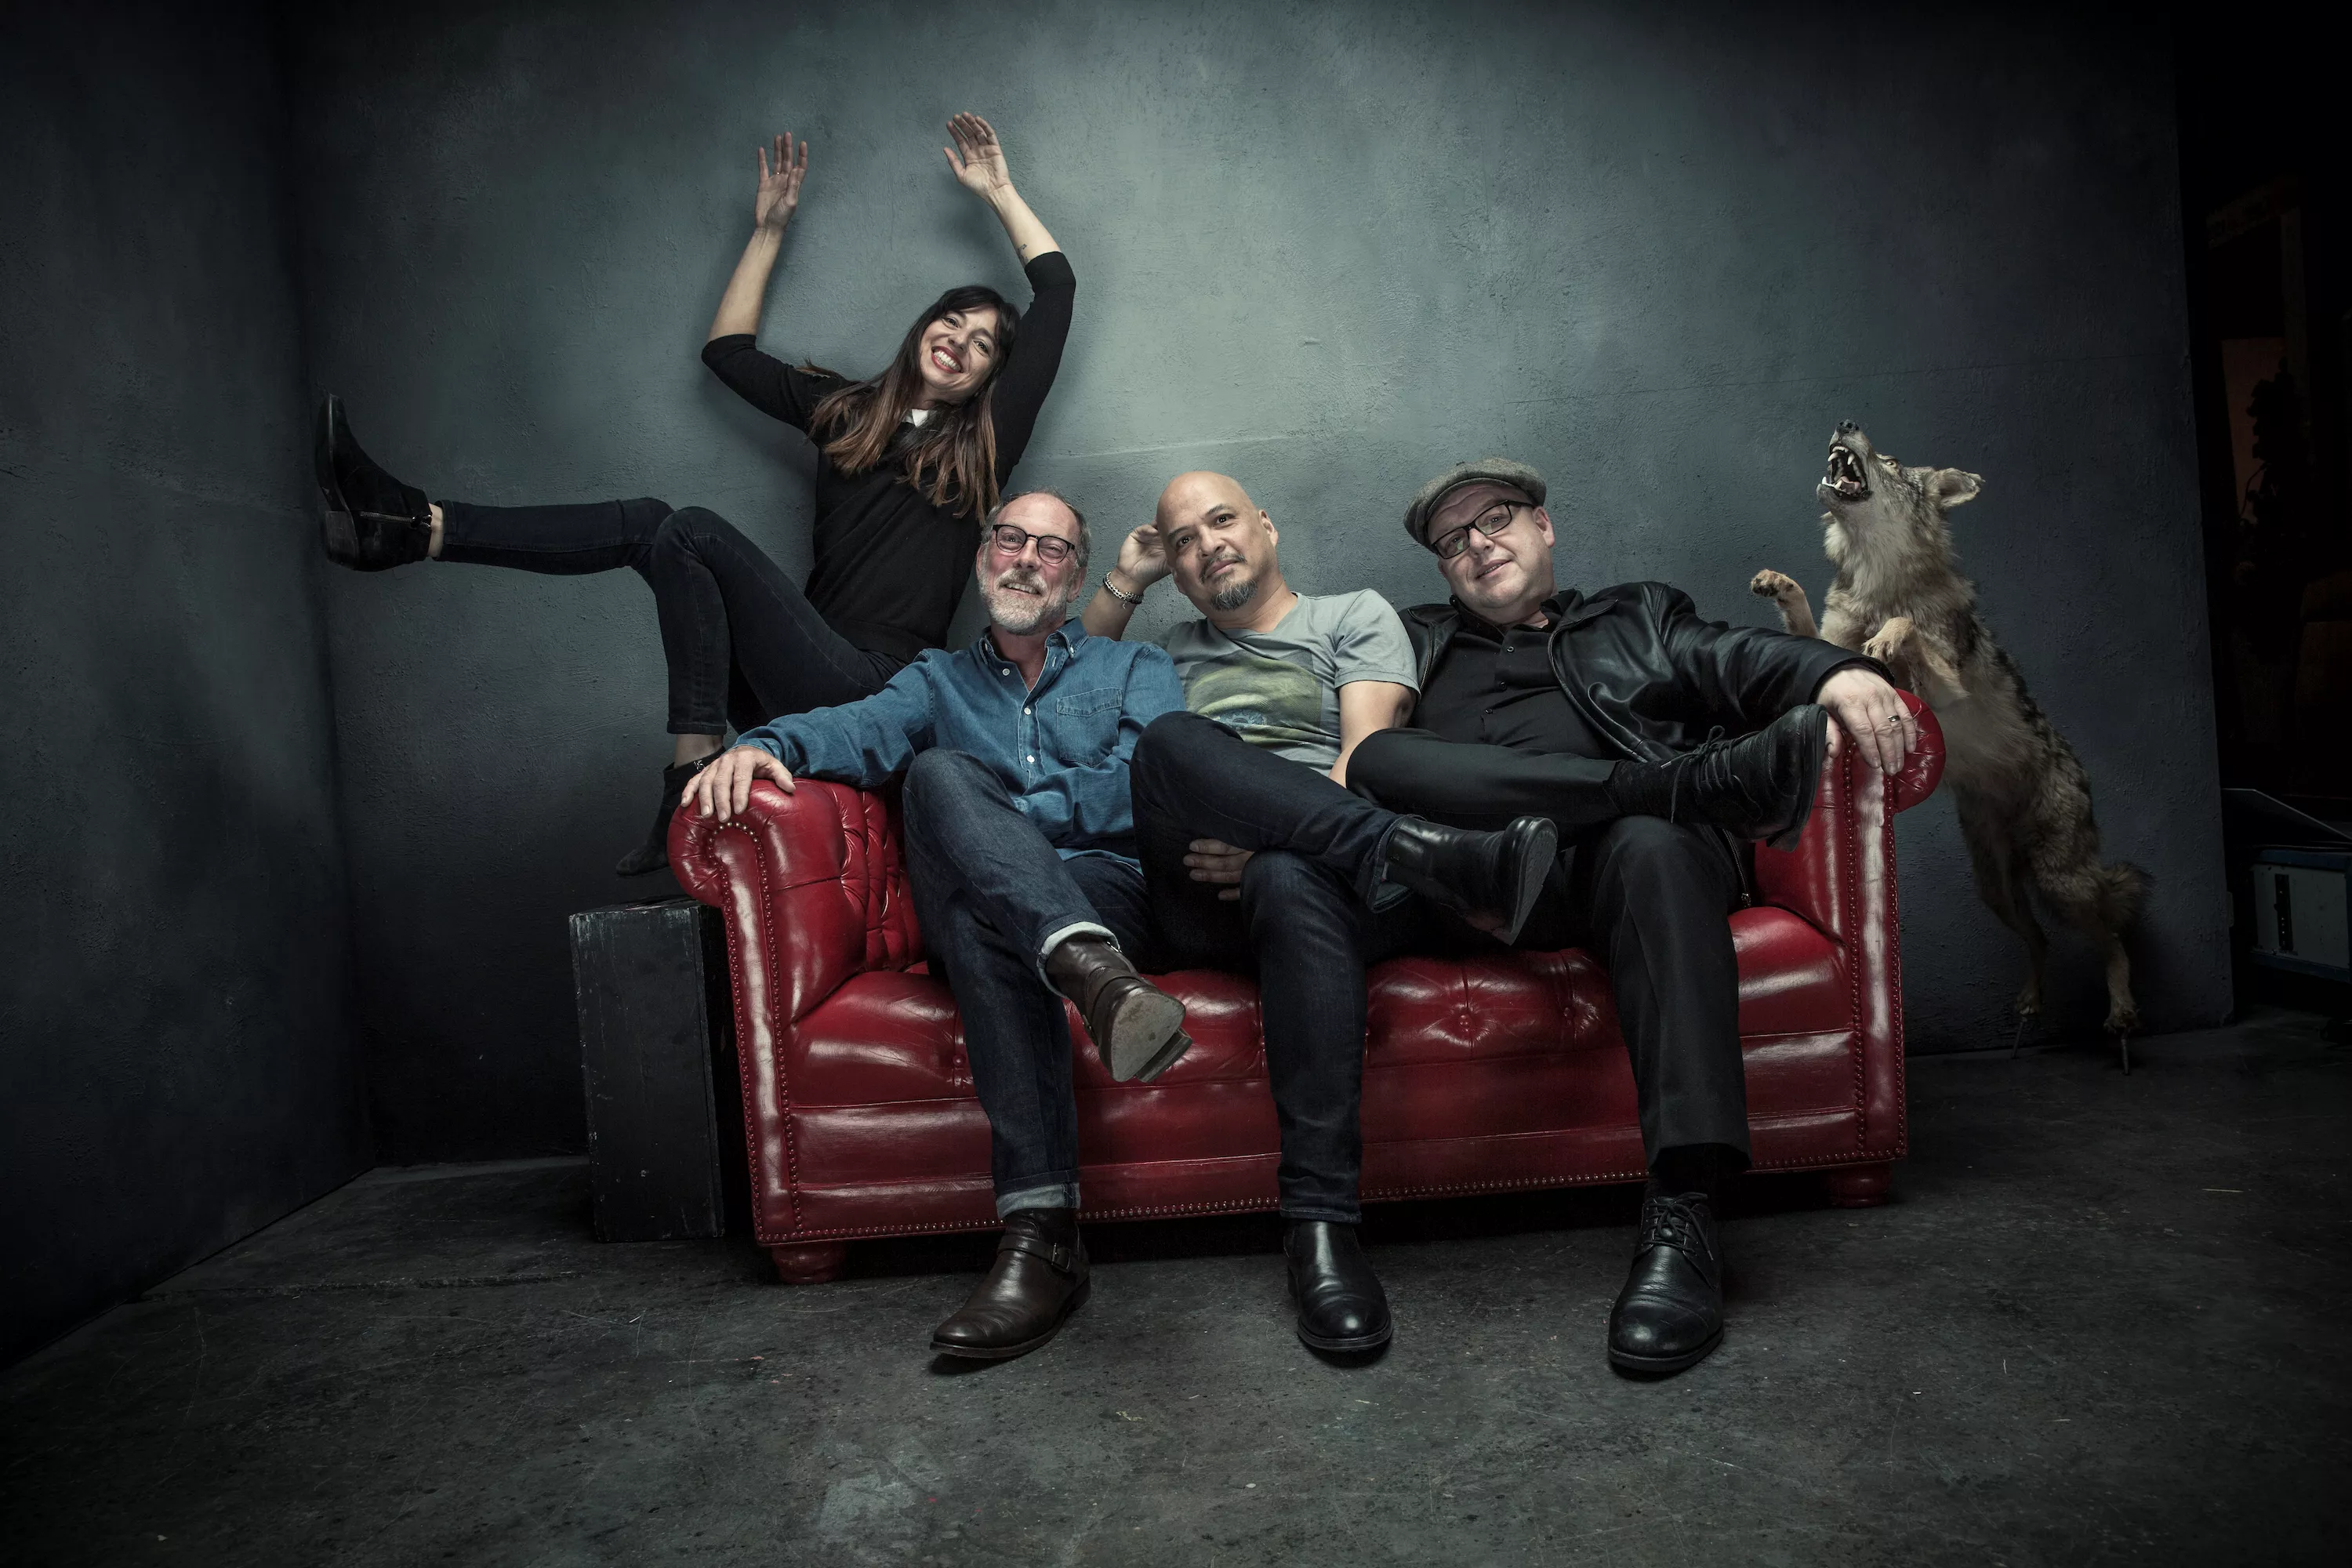 Pixies-guitarist er endt i rehab grundet alkohol- og narkotikamisbrug